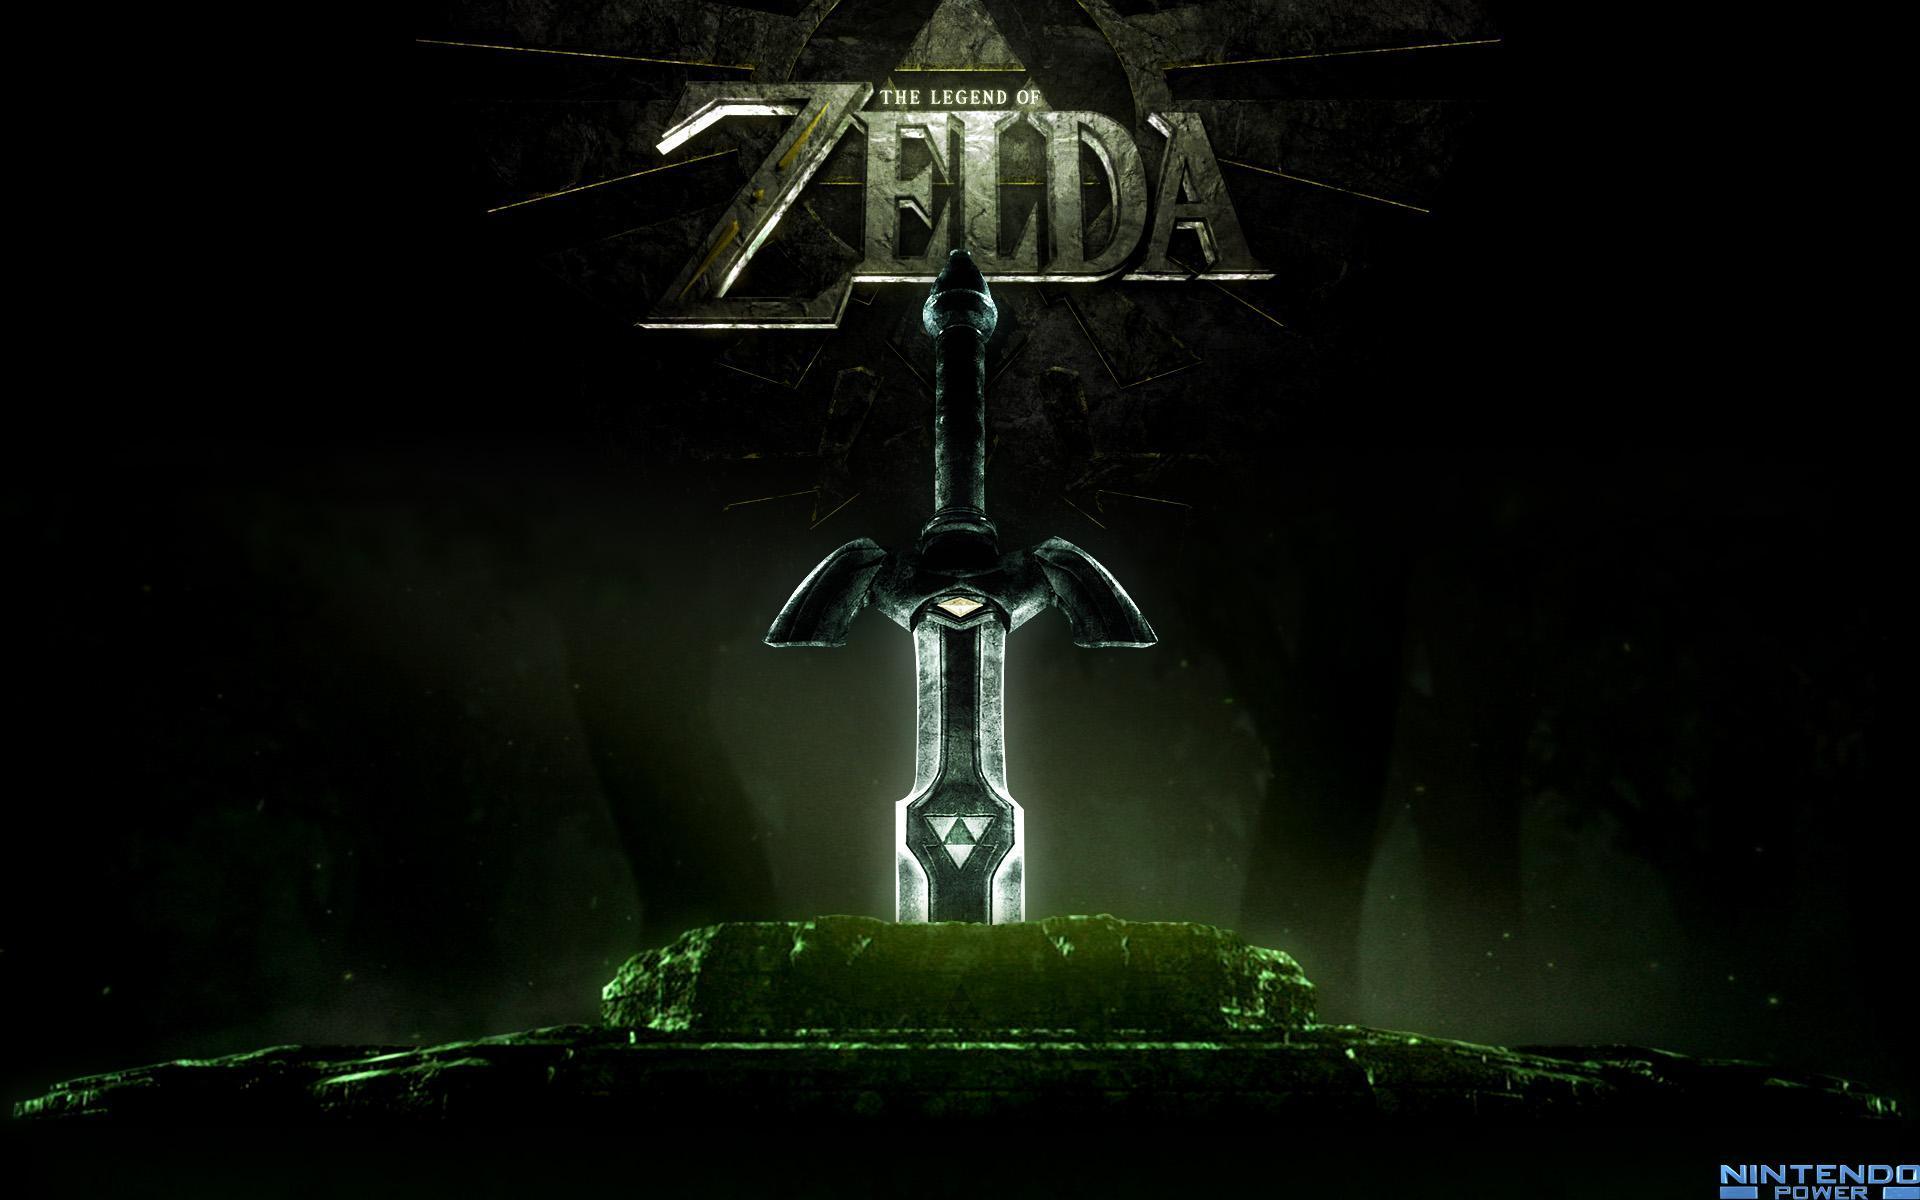 Wallpaper: The Legend of Zelda: Twilight Princess. Nintendo